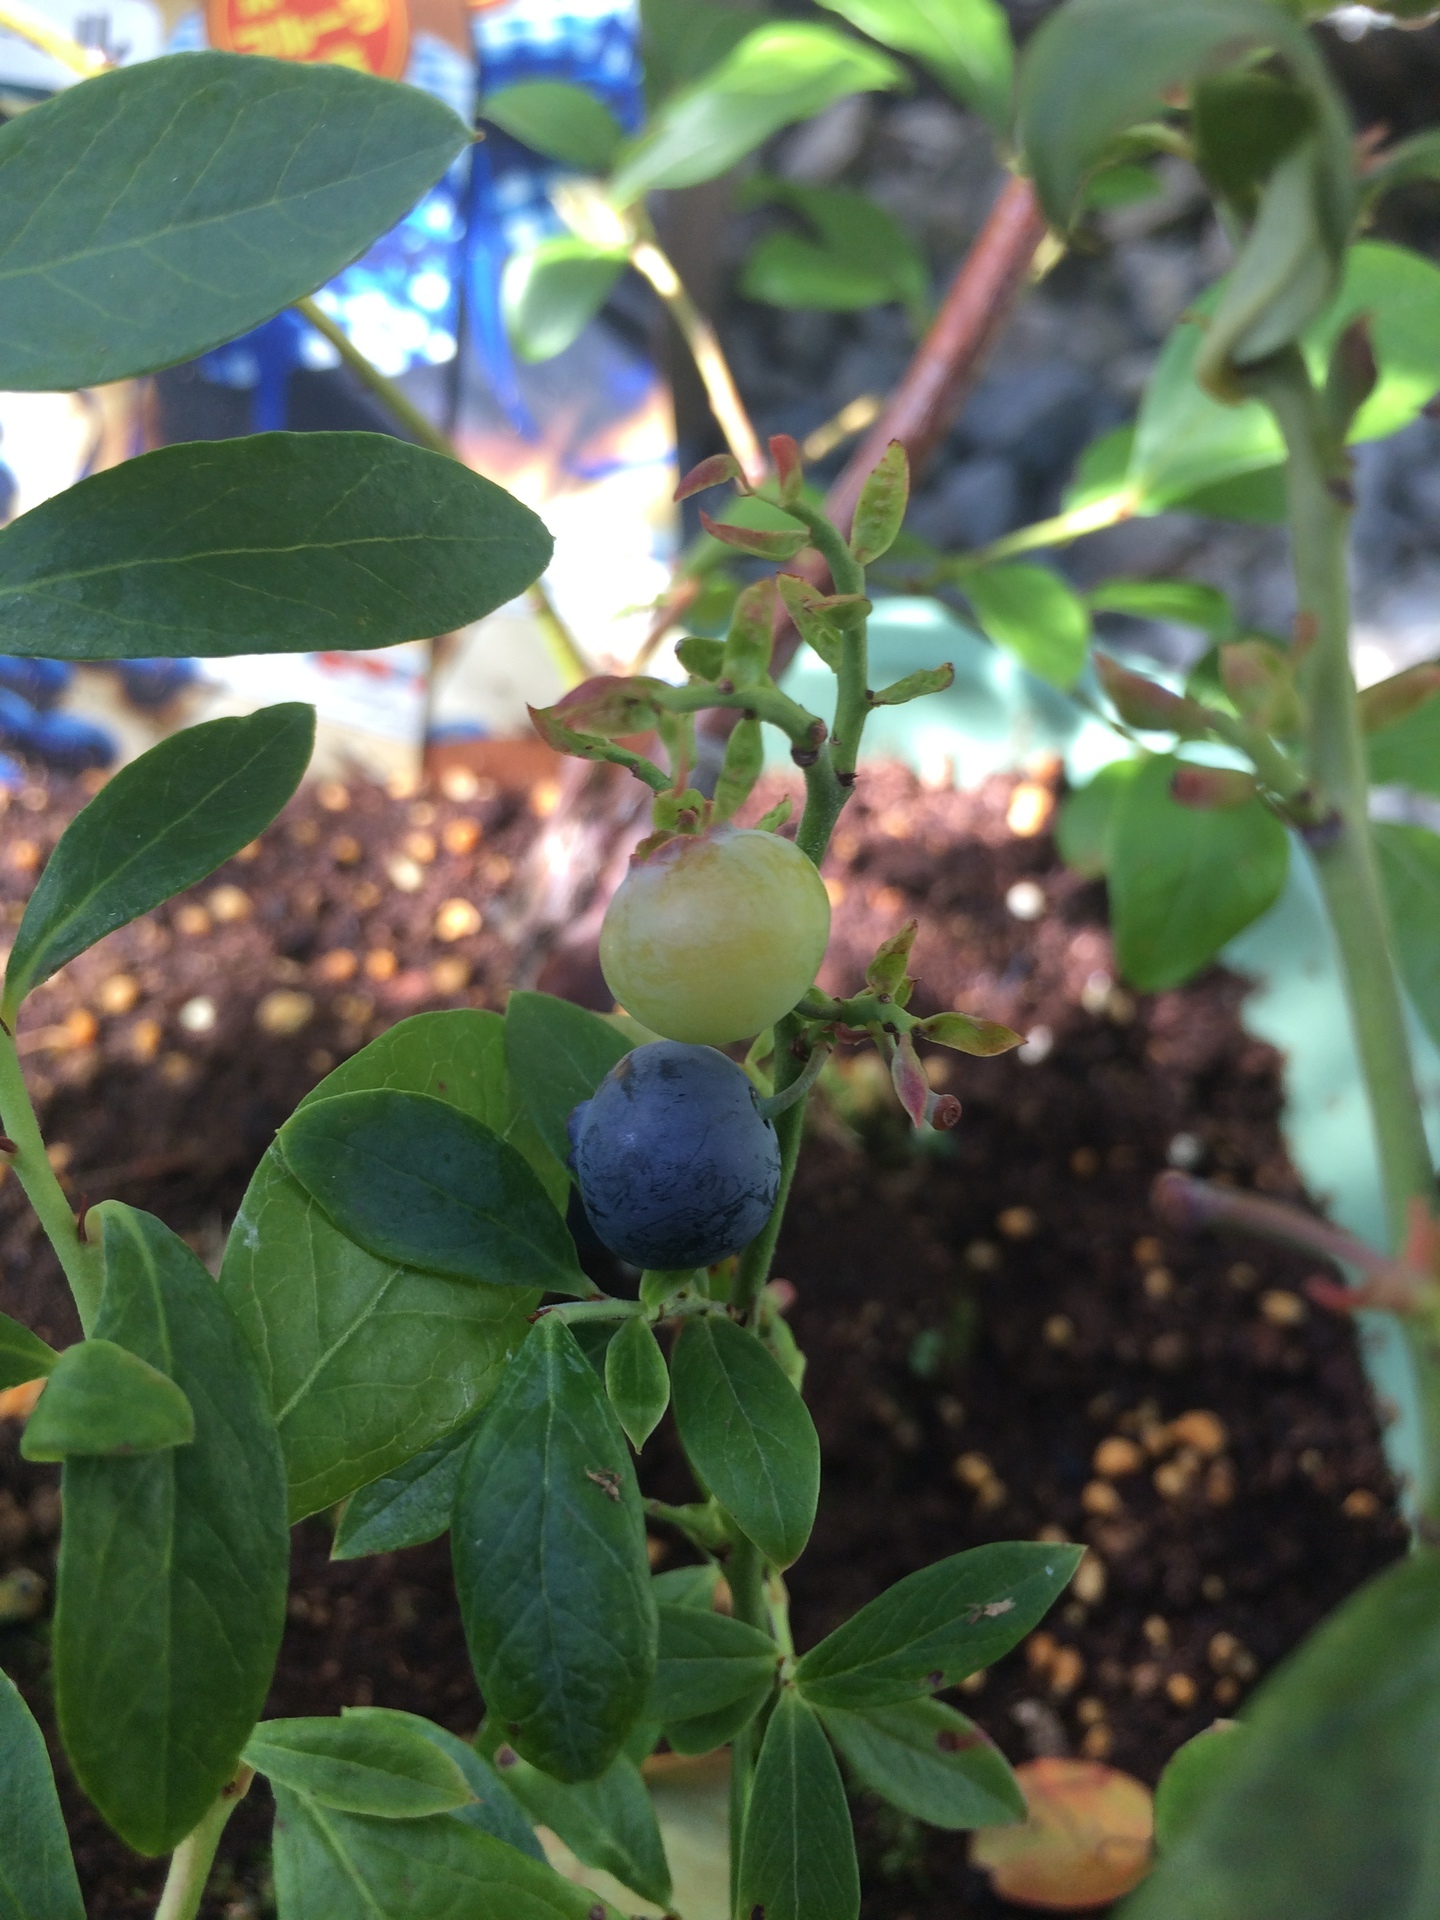 鉢植えでブルーベリーとブラックベリー栽培を始めました Hugkumiブログ 育児とダックスの暮らし